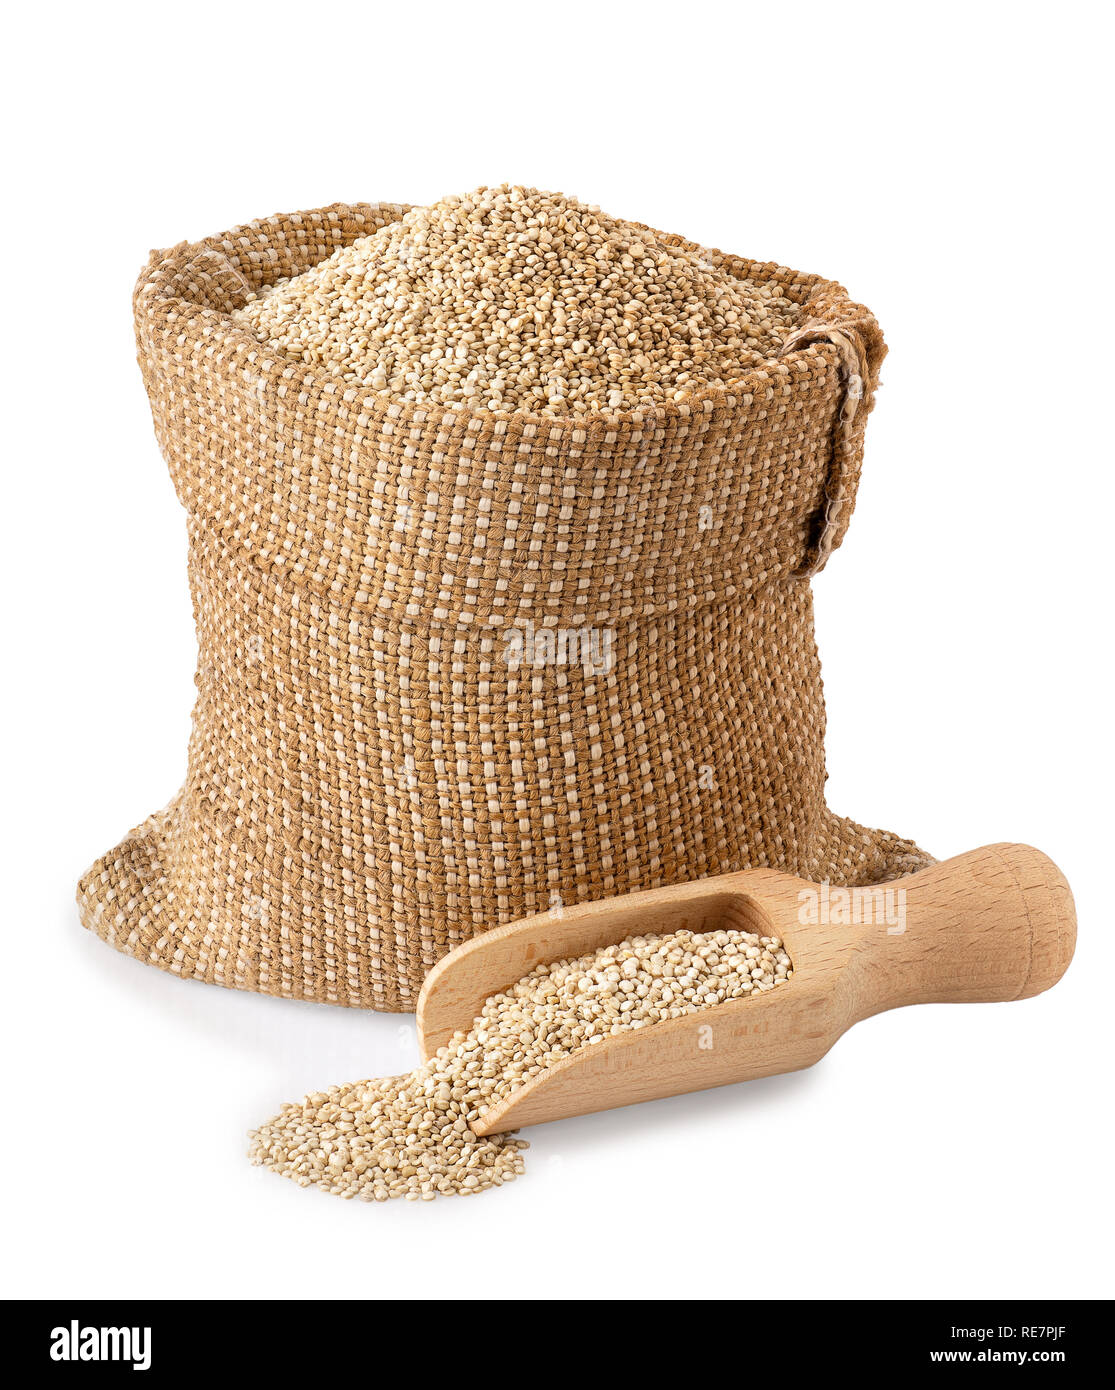 Les graines de quinoa dans un sac Banque D'Images